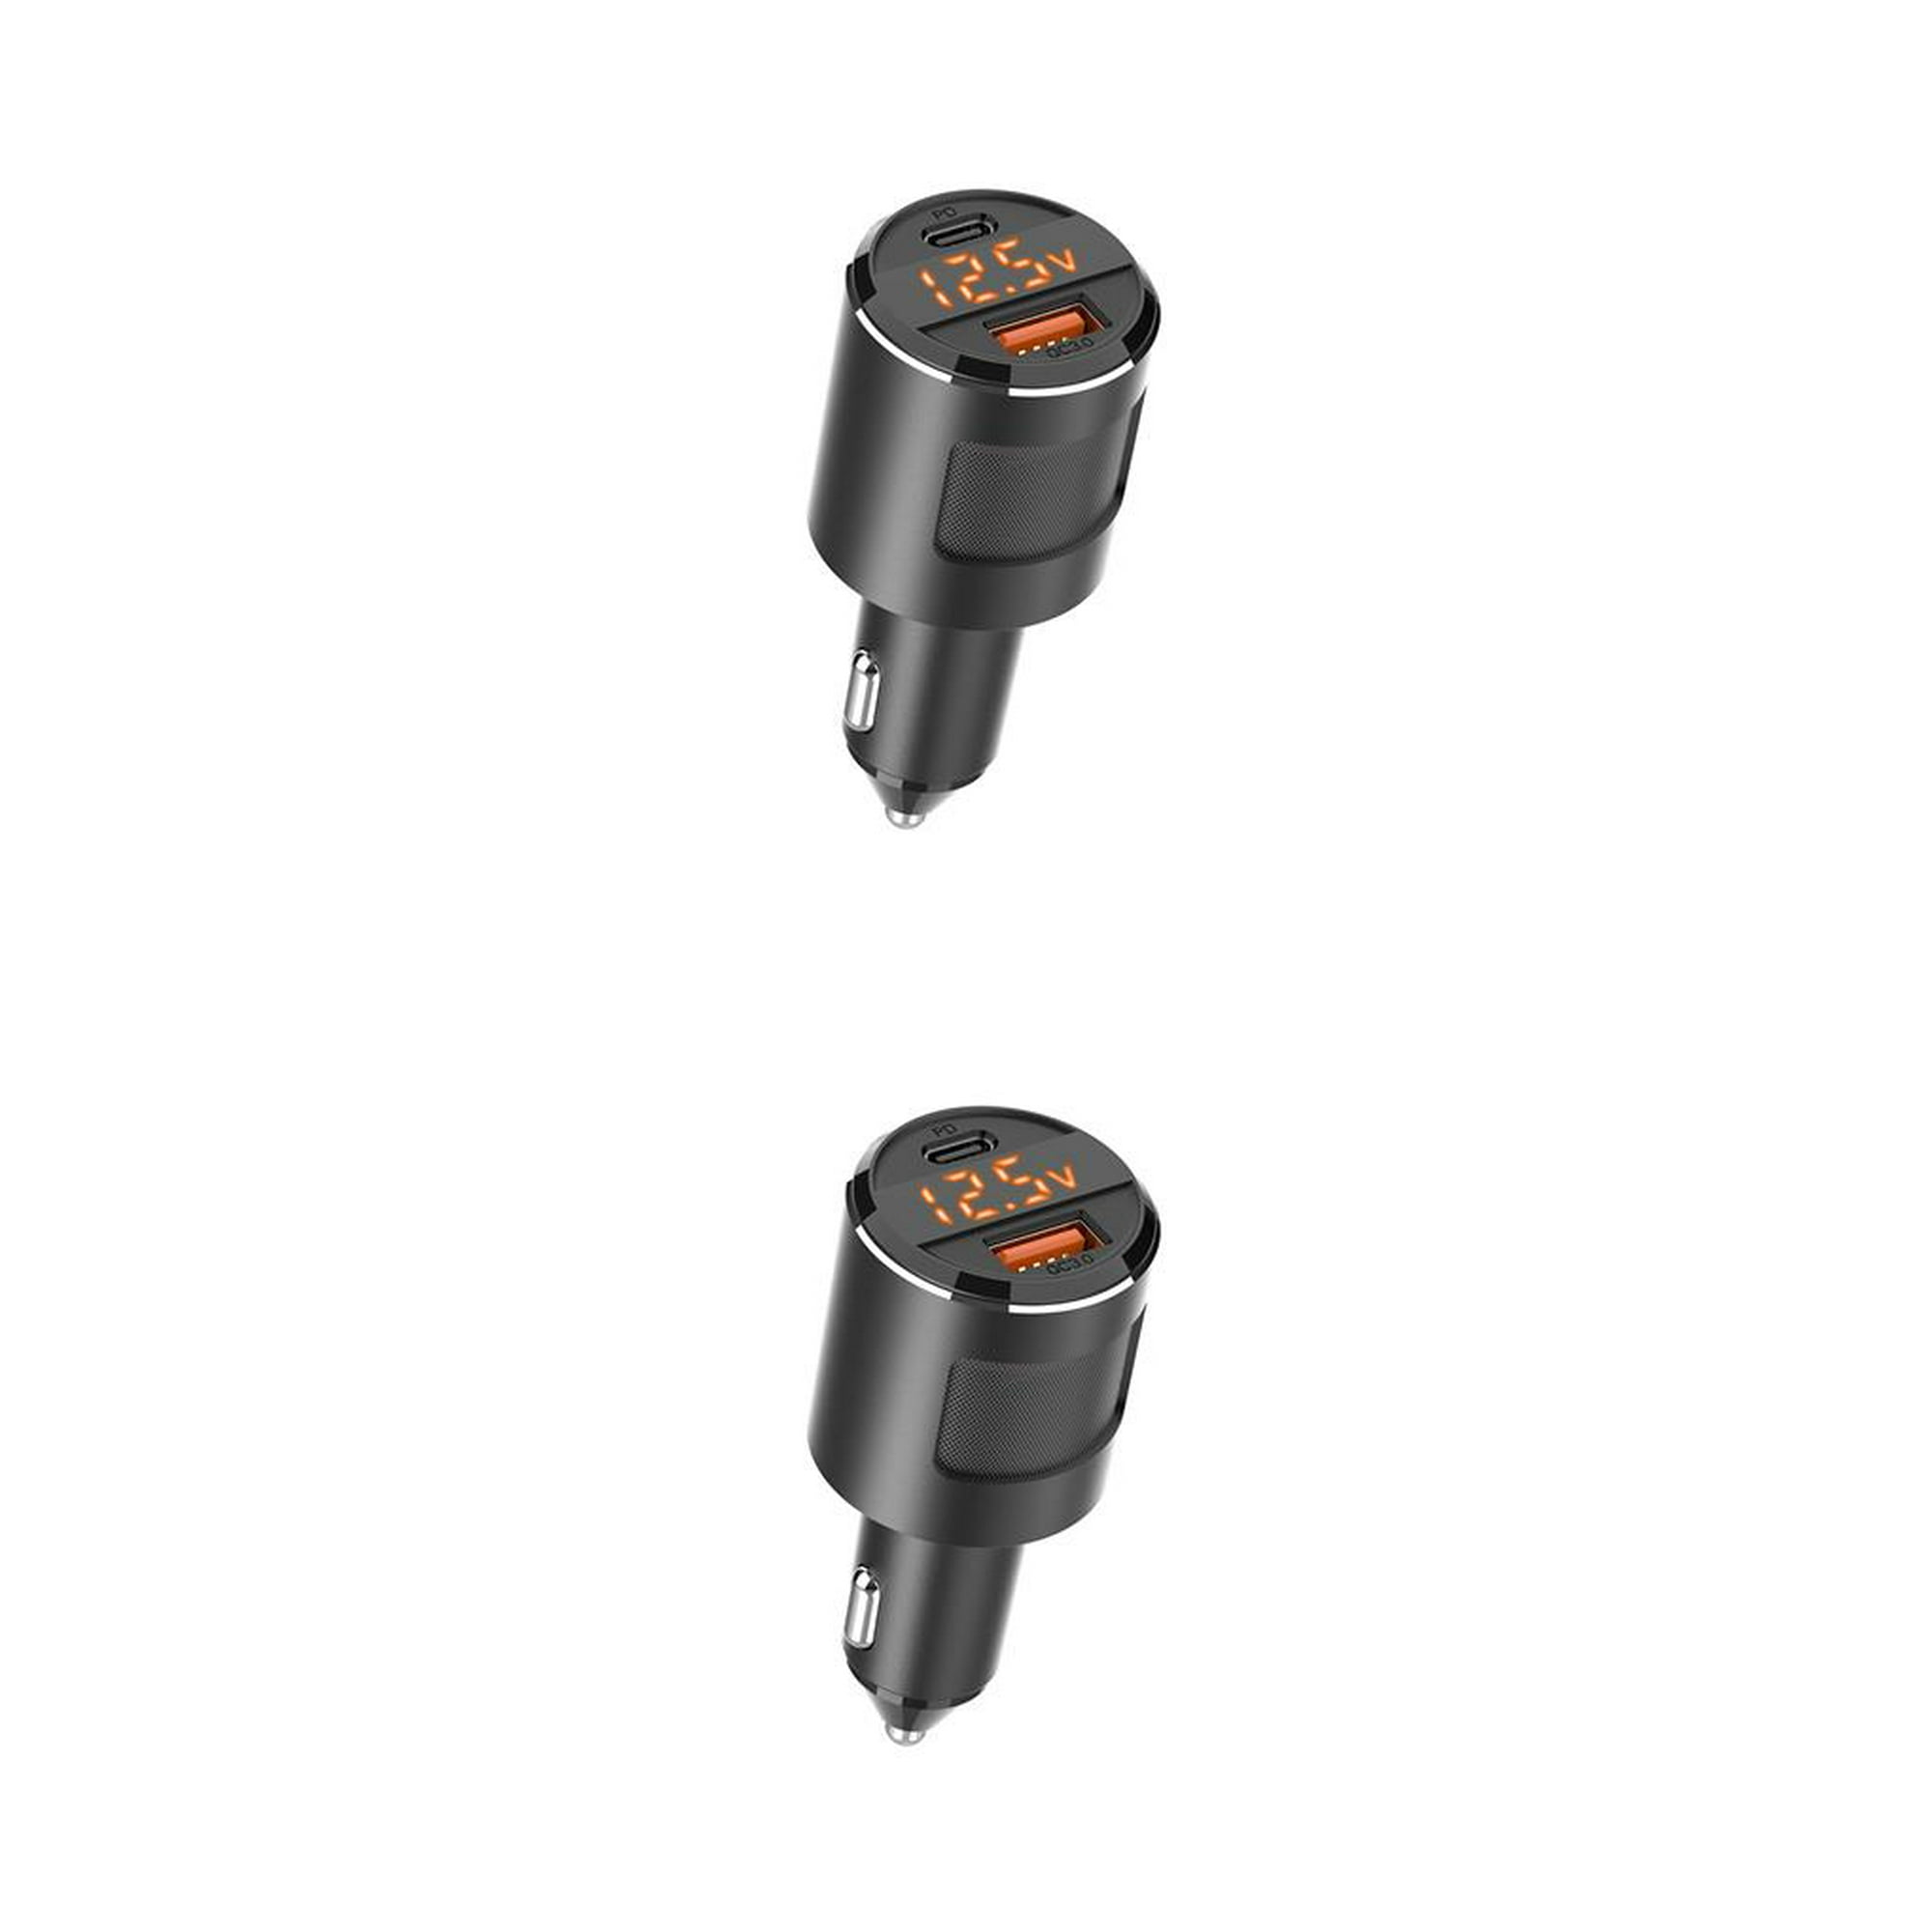 Cargador Coche entrada USB-C y QC3.0/ 20w Negro + Cable USB- C a Ligthning  65w/ 1m